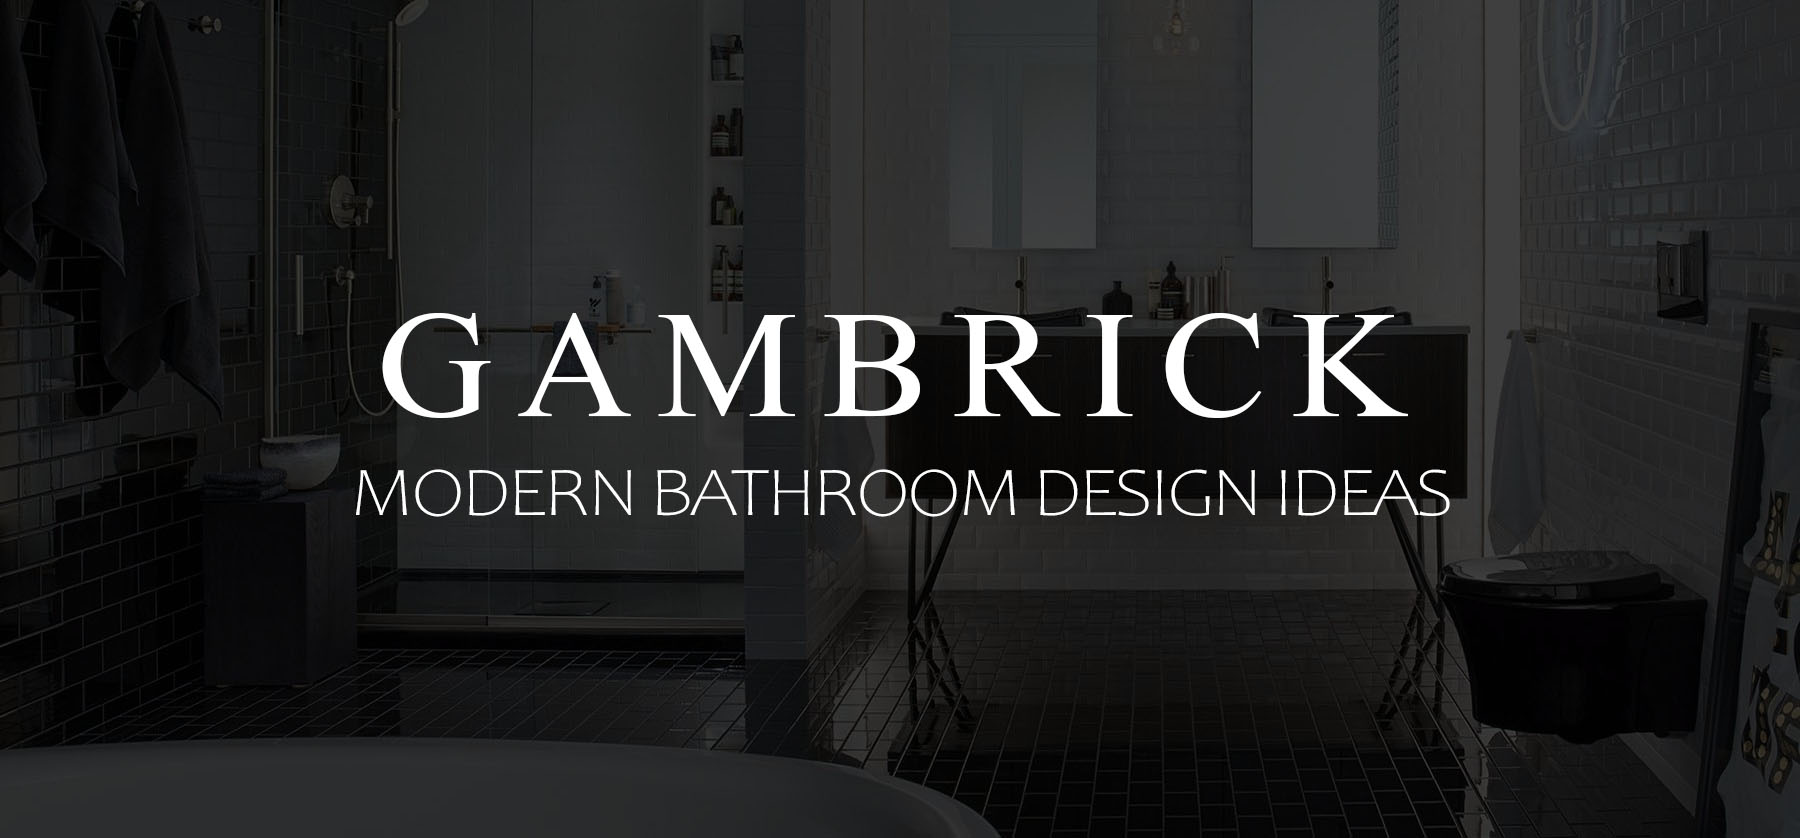 modern bathroom design ideas banner picture